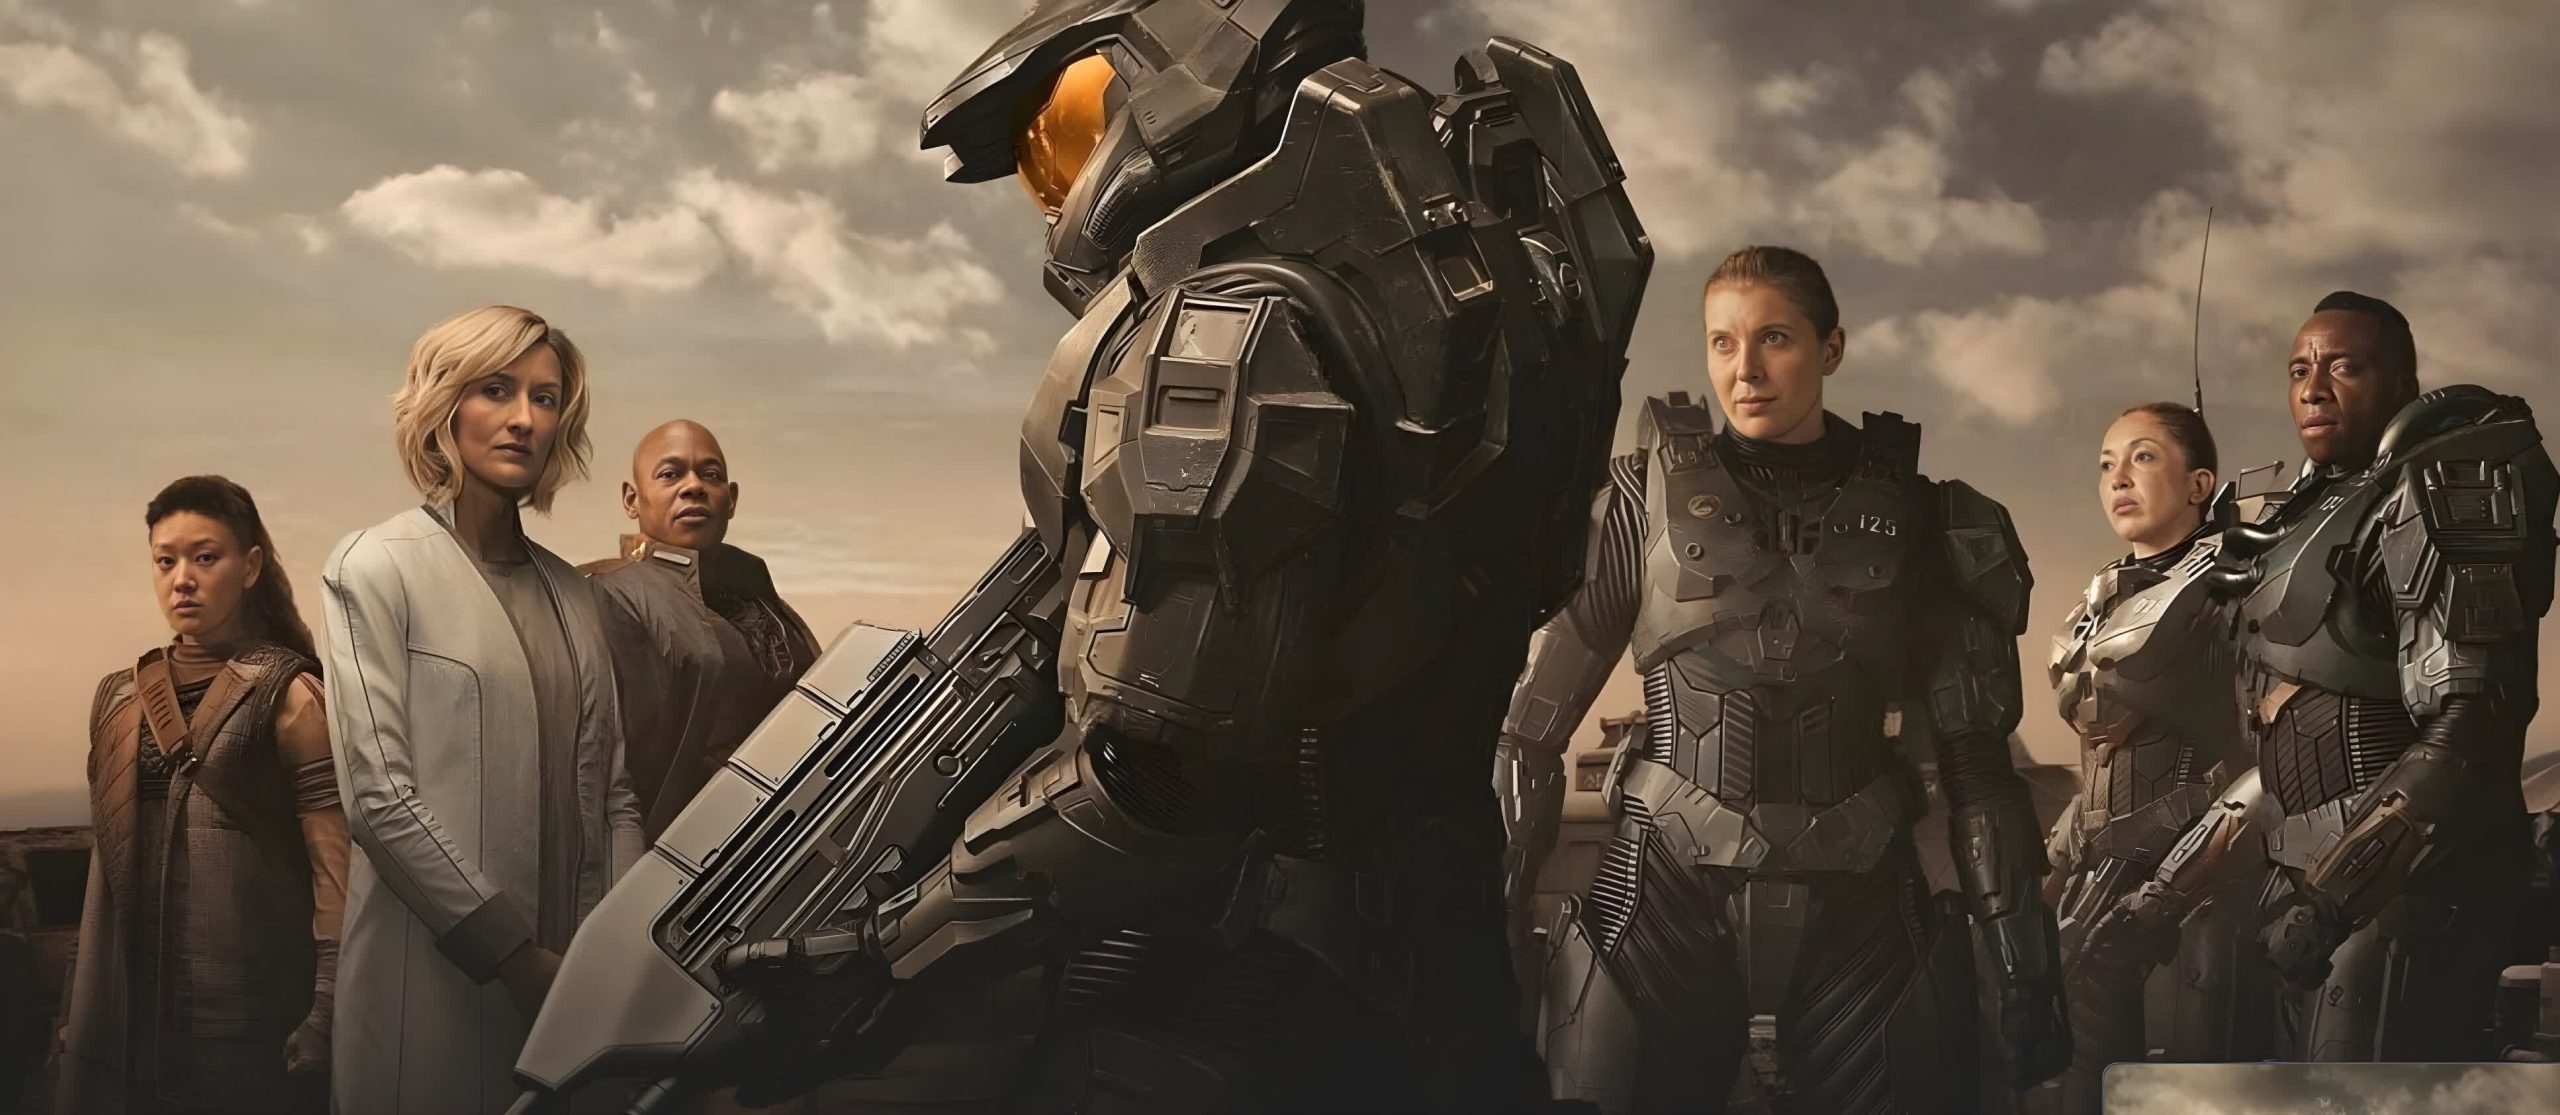 La serie de televisión Halo fue cancelada después de dos temporadas, pero podría encontrar un nuevo hogar